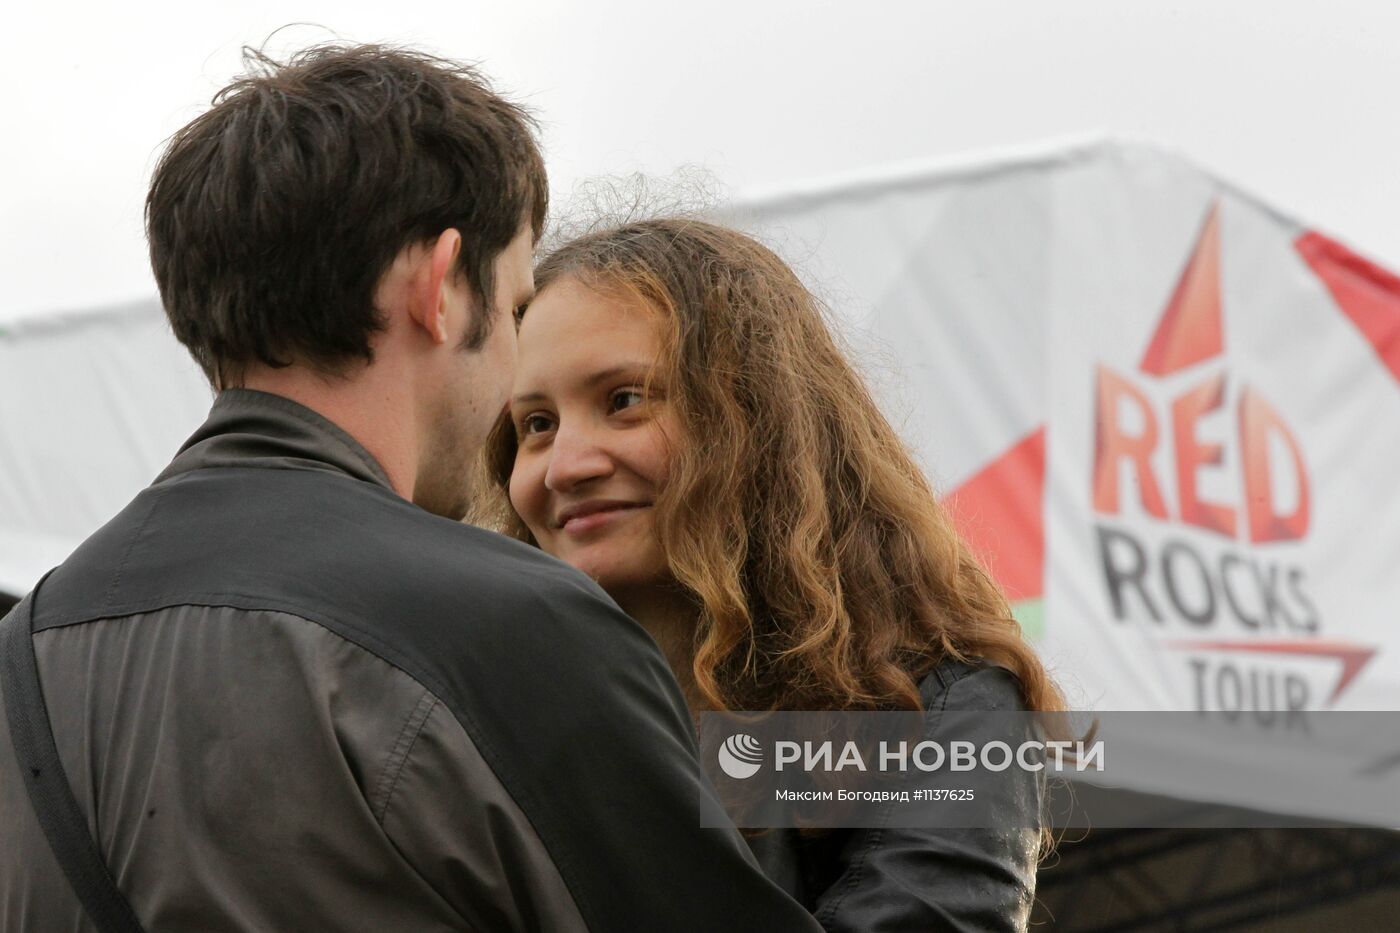 Фестиваль Red Rocks Tour в Казани